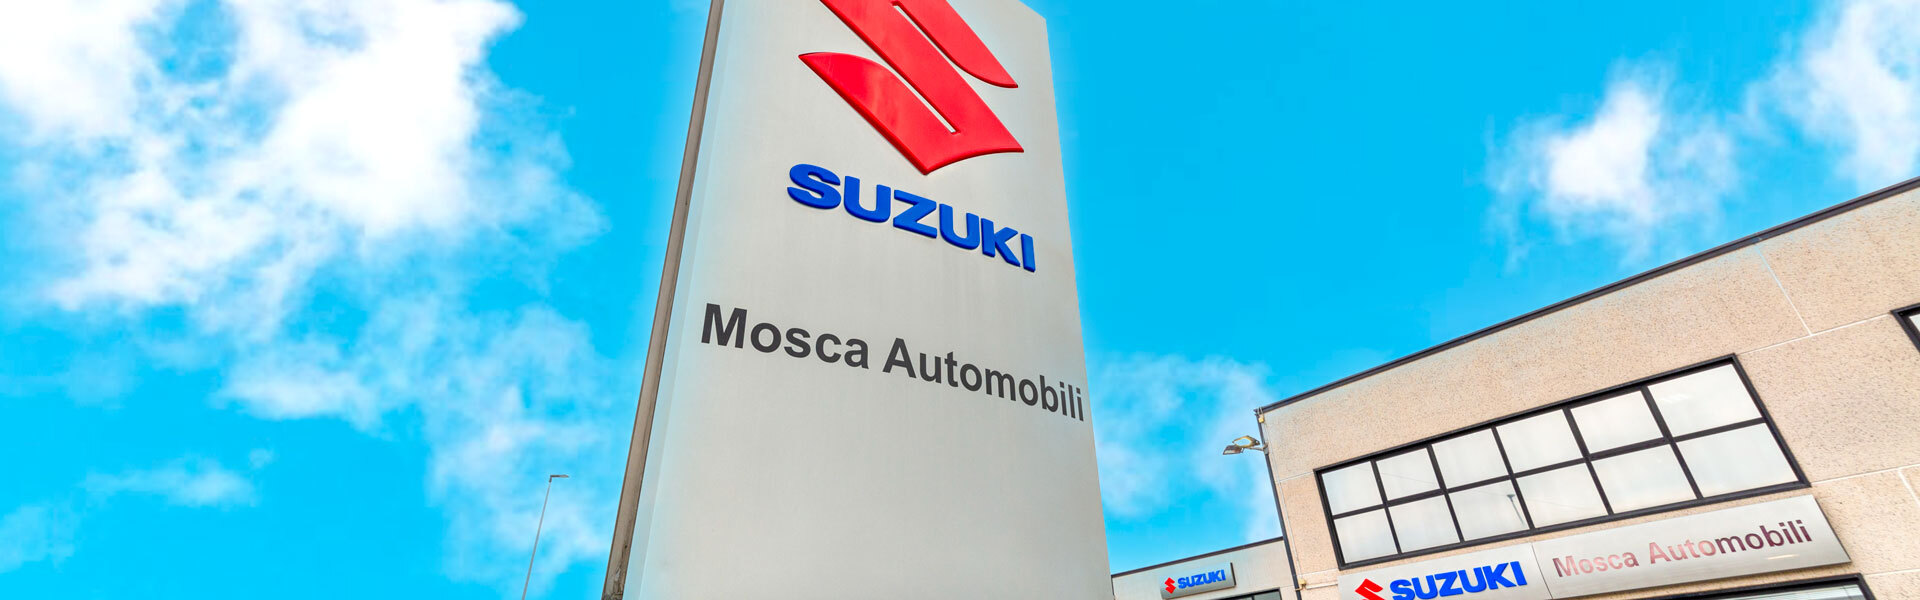 Mosca Automobili Concessionaria Suzuki - Concessionaria ufficiale Suzuki